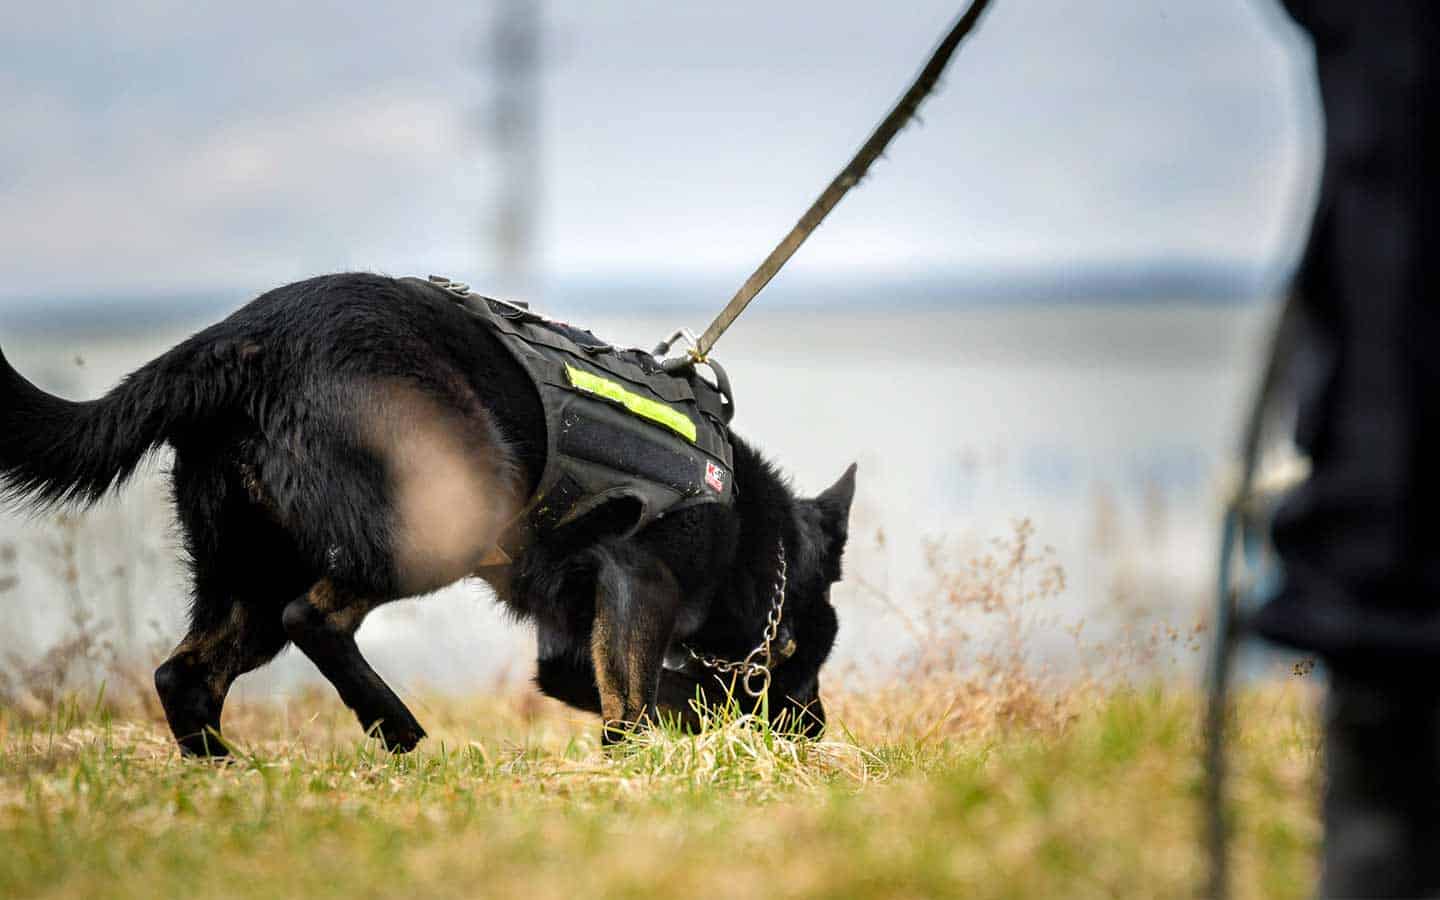 Calendar photo shoots among duties of OPP canine unit